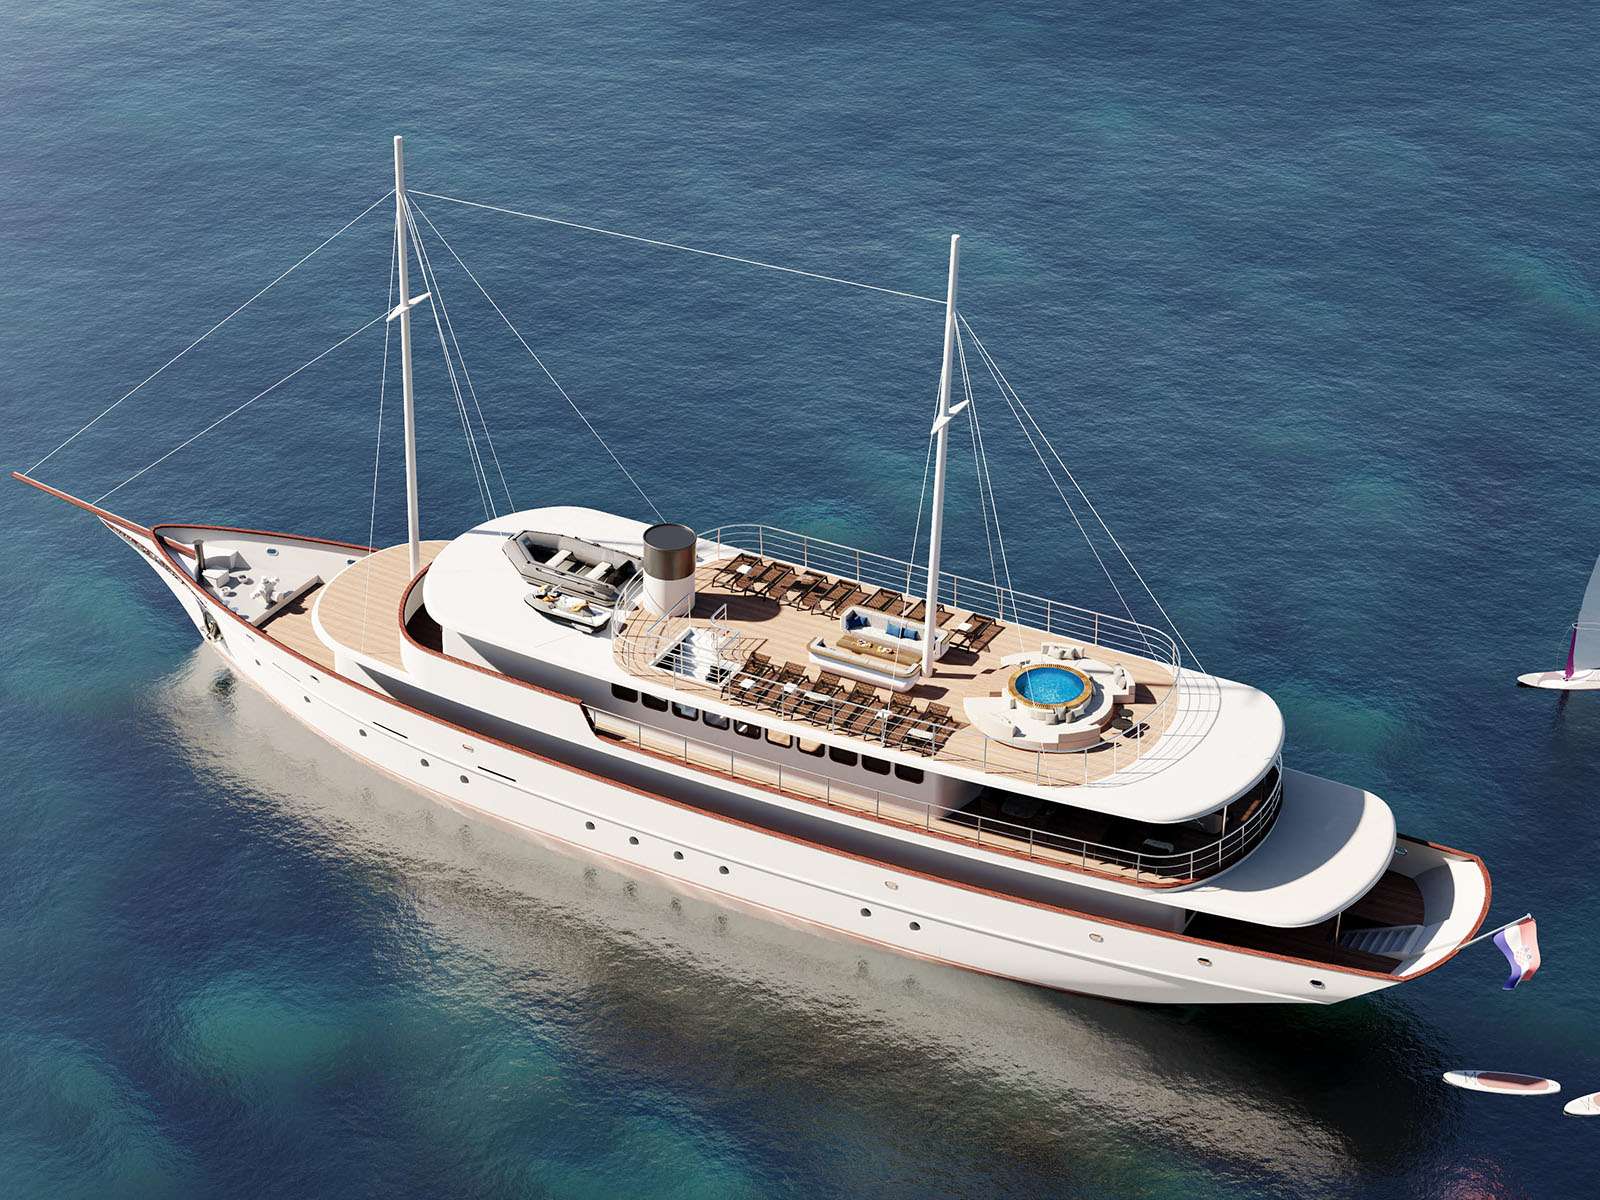 Bellezza - Yacht Charter Pomer & Boat hire in Croatia 2